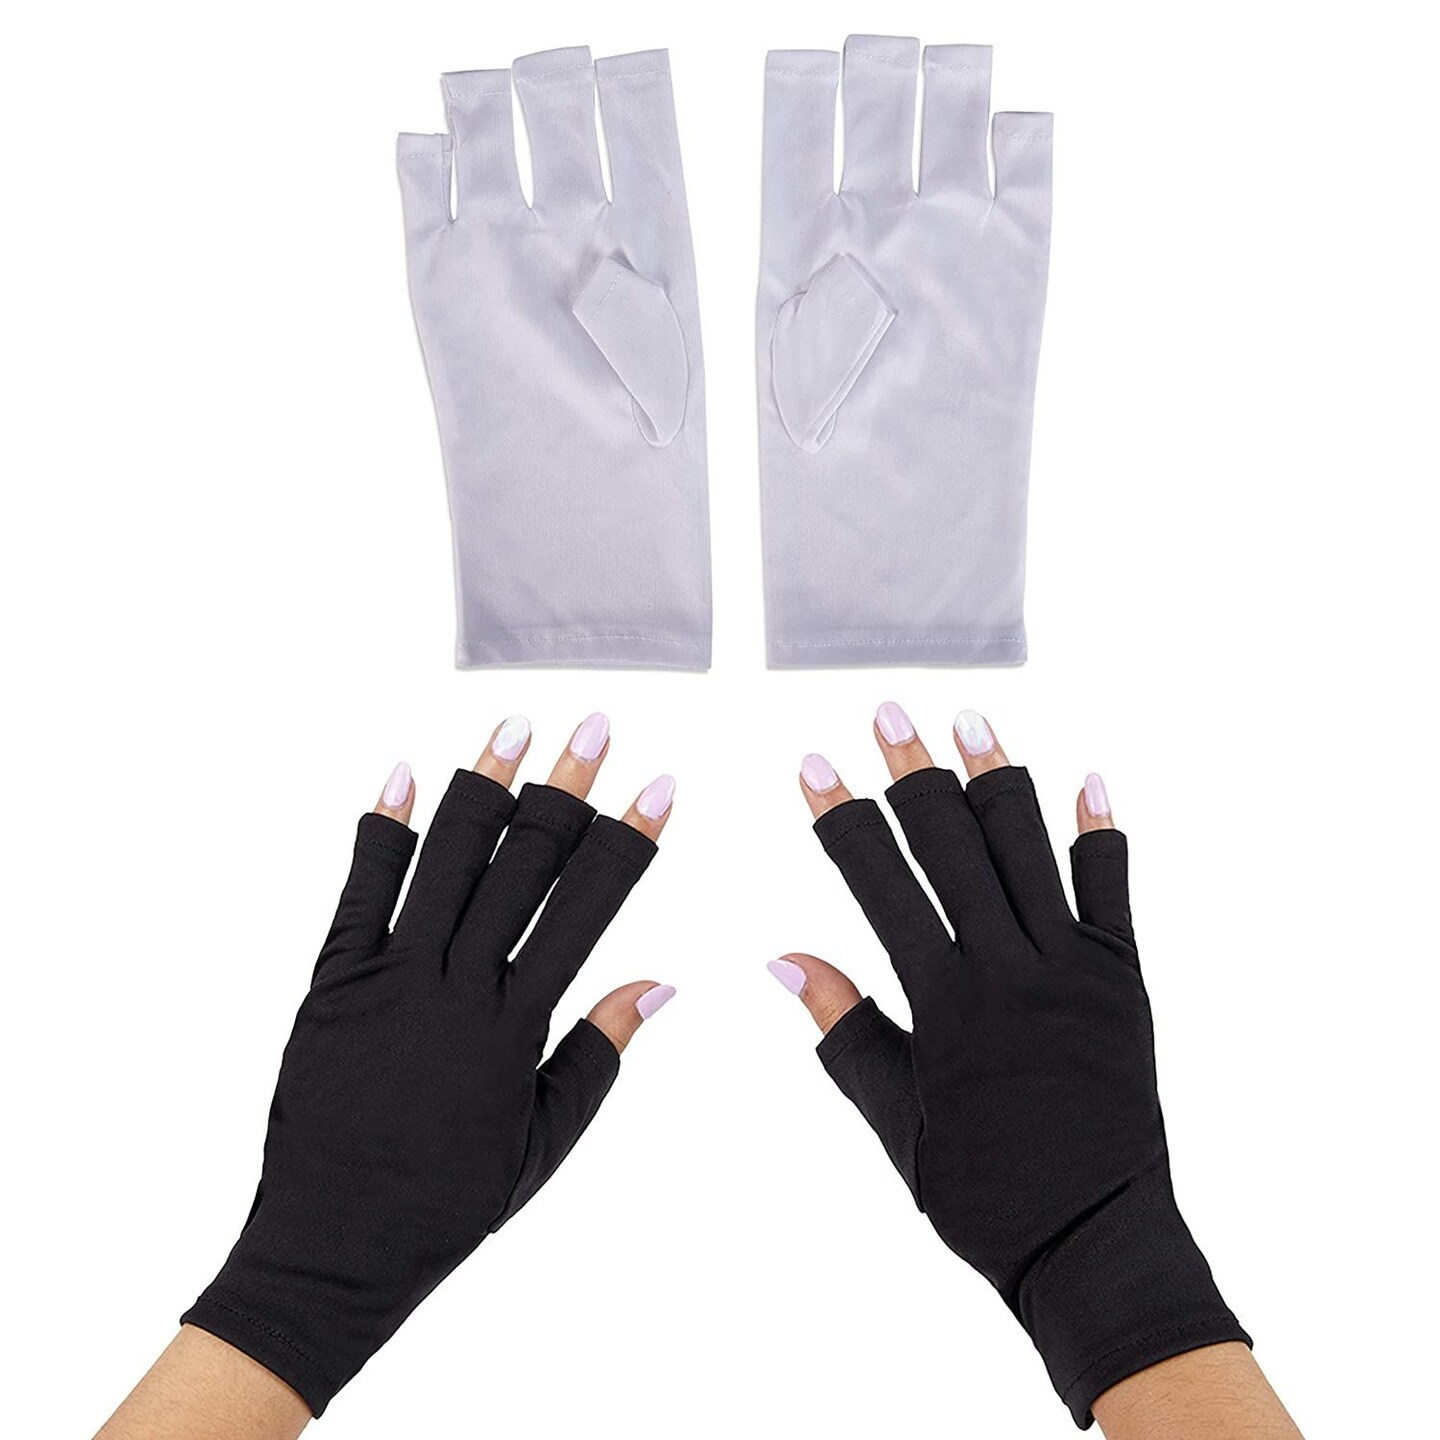 Fingerless UV Light Gloves for Gel Manicures, Sun Protection (2